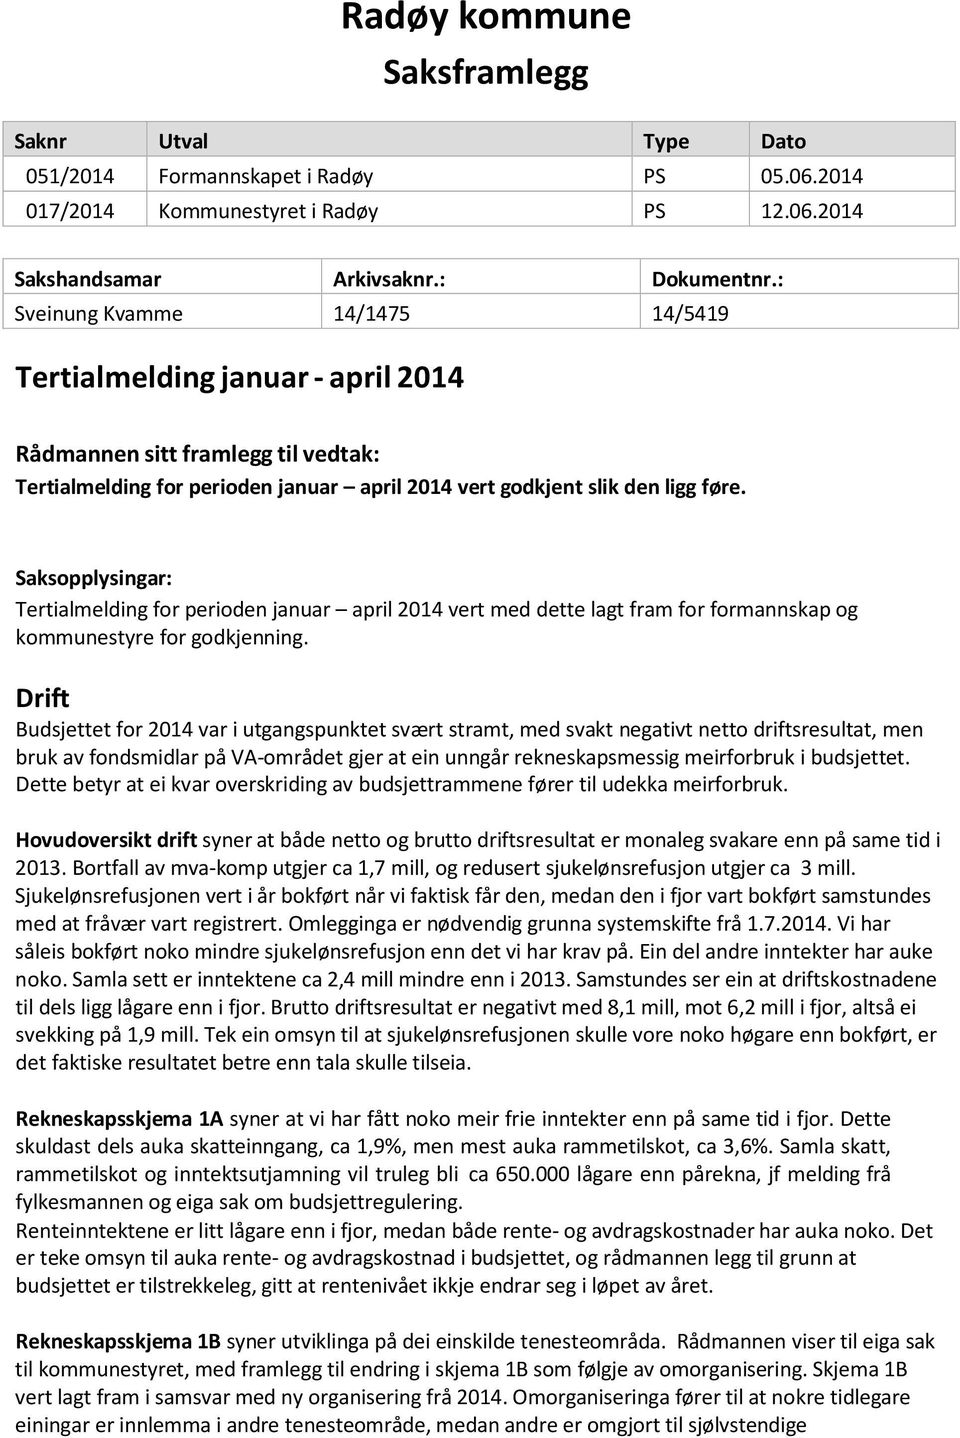 Saksopplysingar: Tertialmelding for perioden januar april 2014 vert med dette lagt fram for formannskap og kommunestyre for godkjenning.